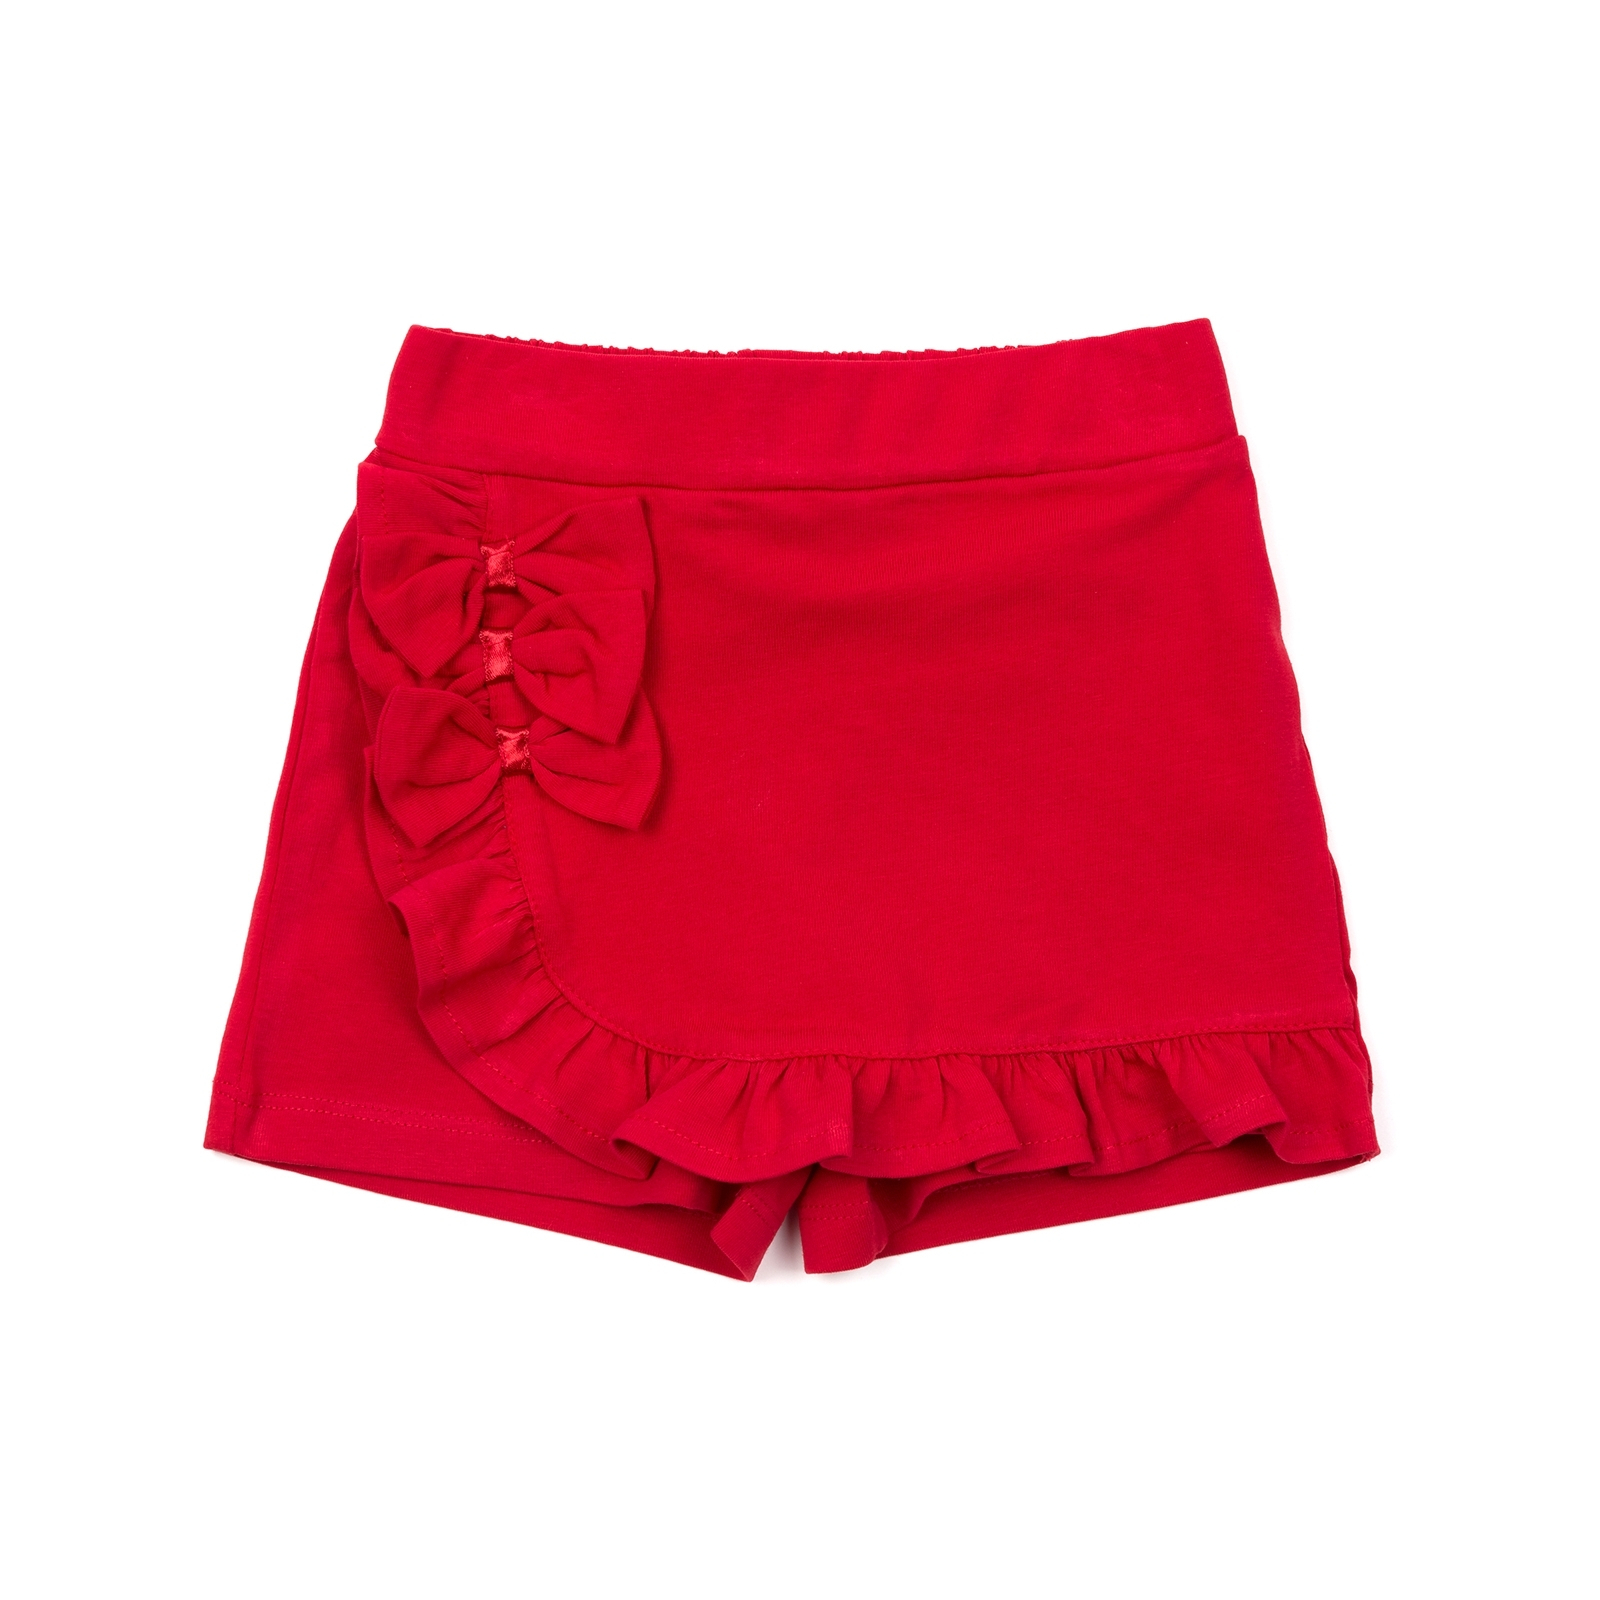 Шорты Breeze юбка (12416-98G-red)